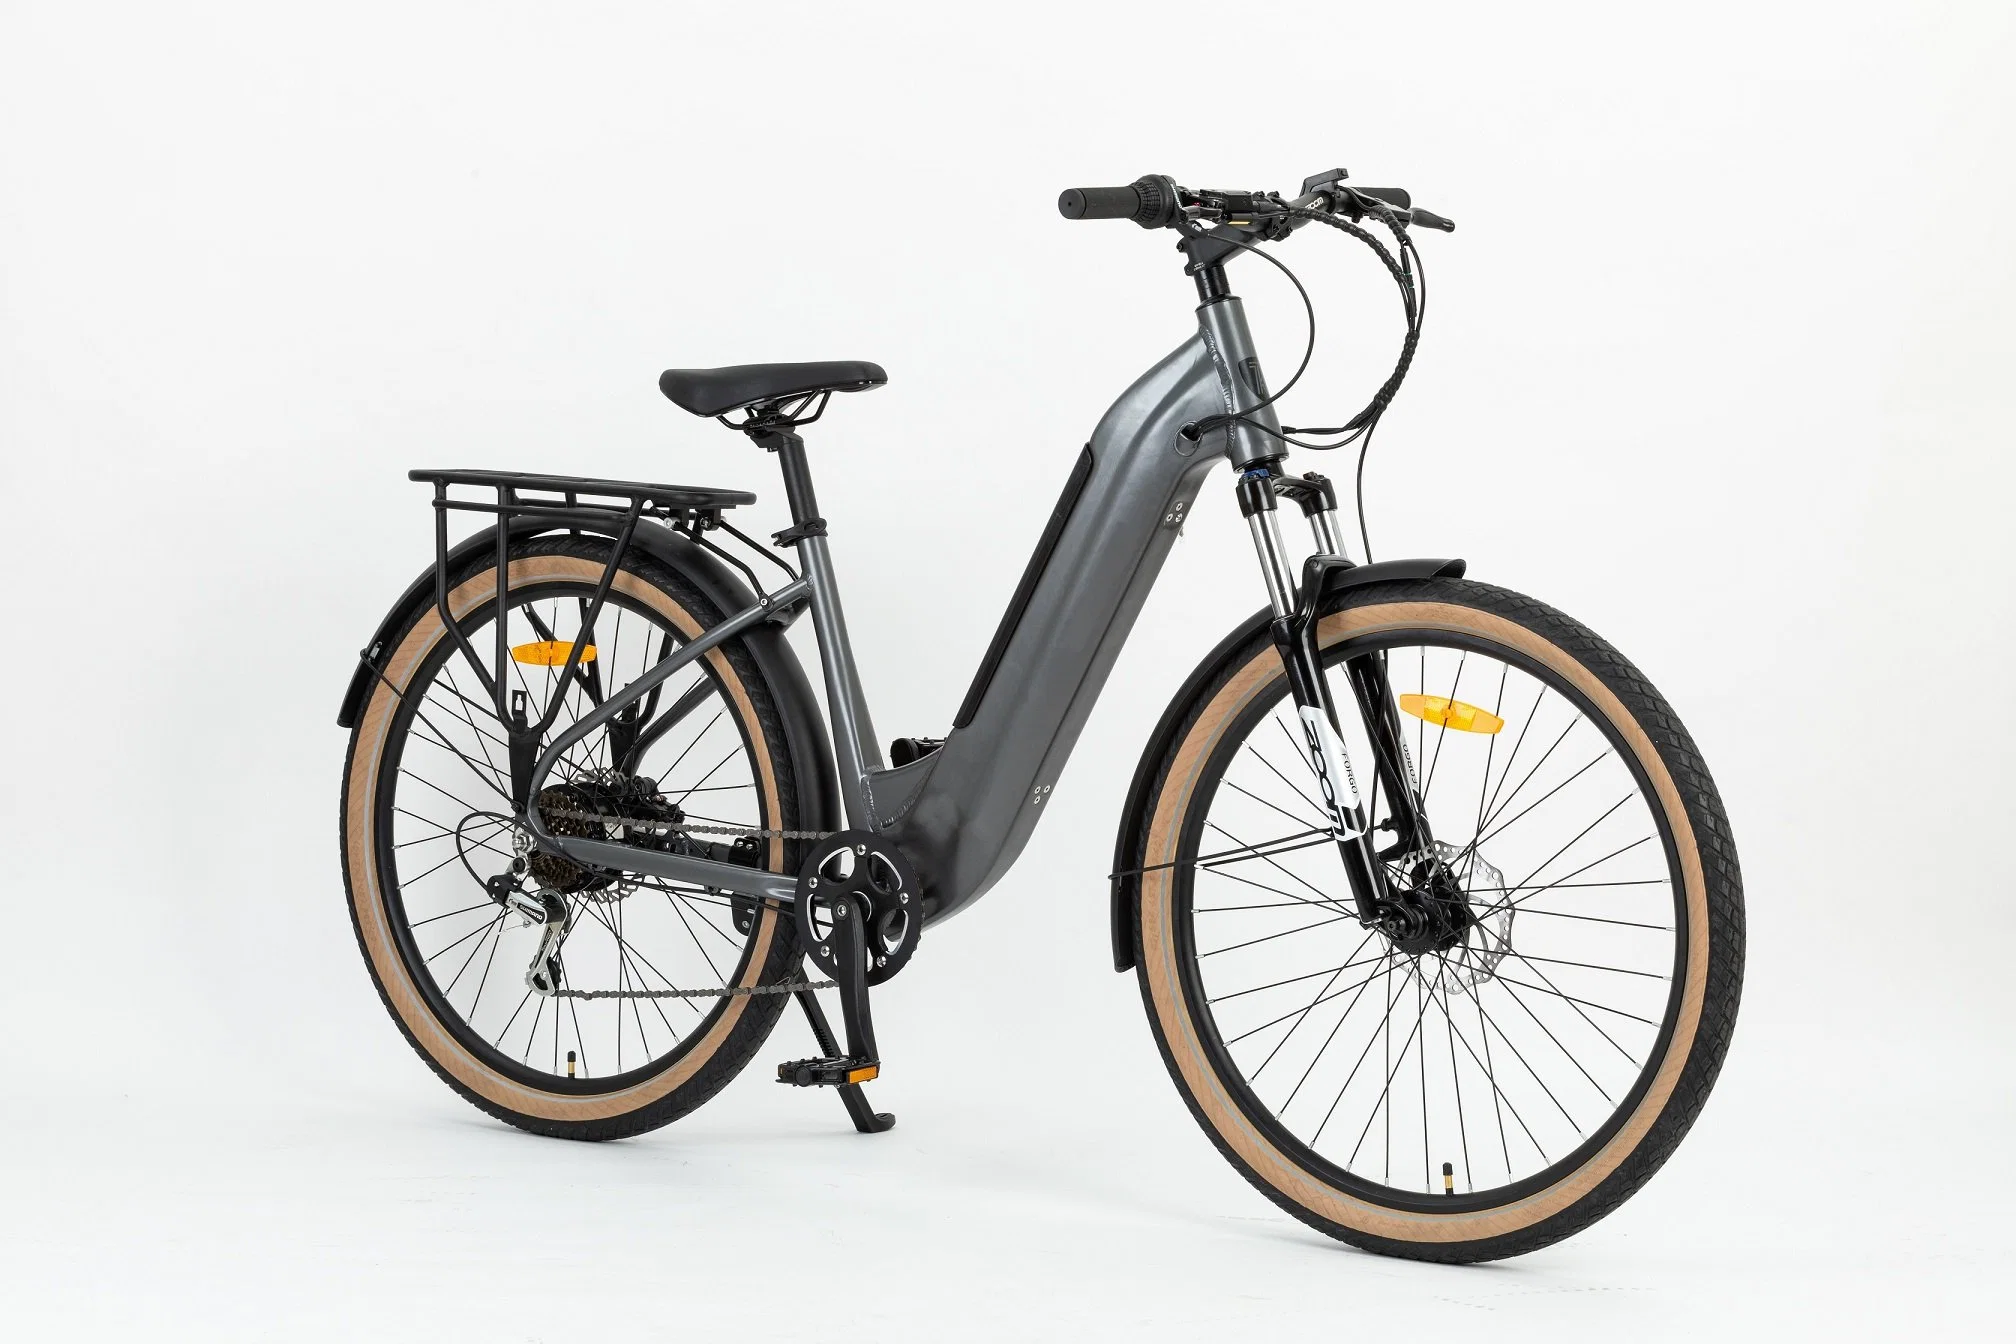 Almacén de la UE el bastidor de aleación de aluminio híbrido eléctrico paso a través de la ciudad eléctrica bicicleta bicicleta para adultos